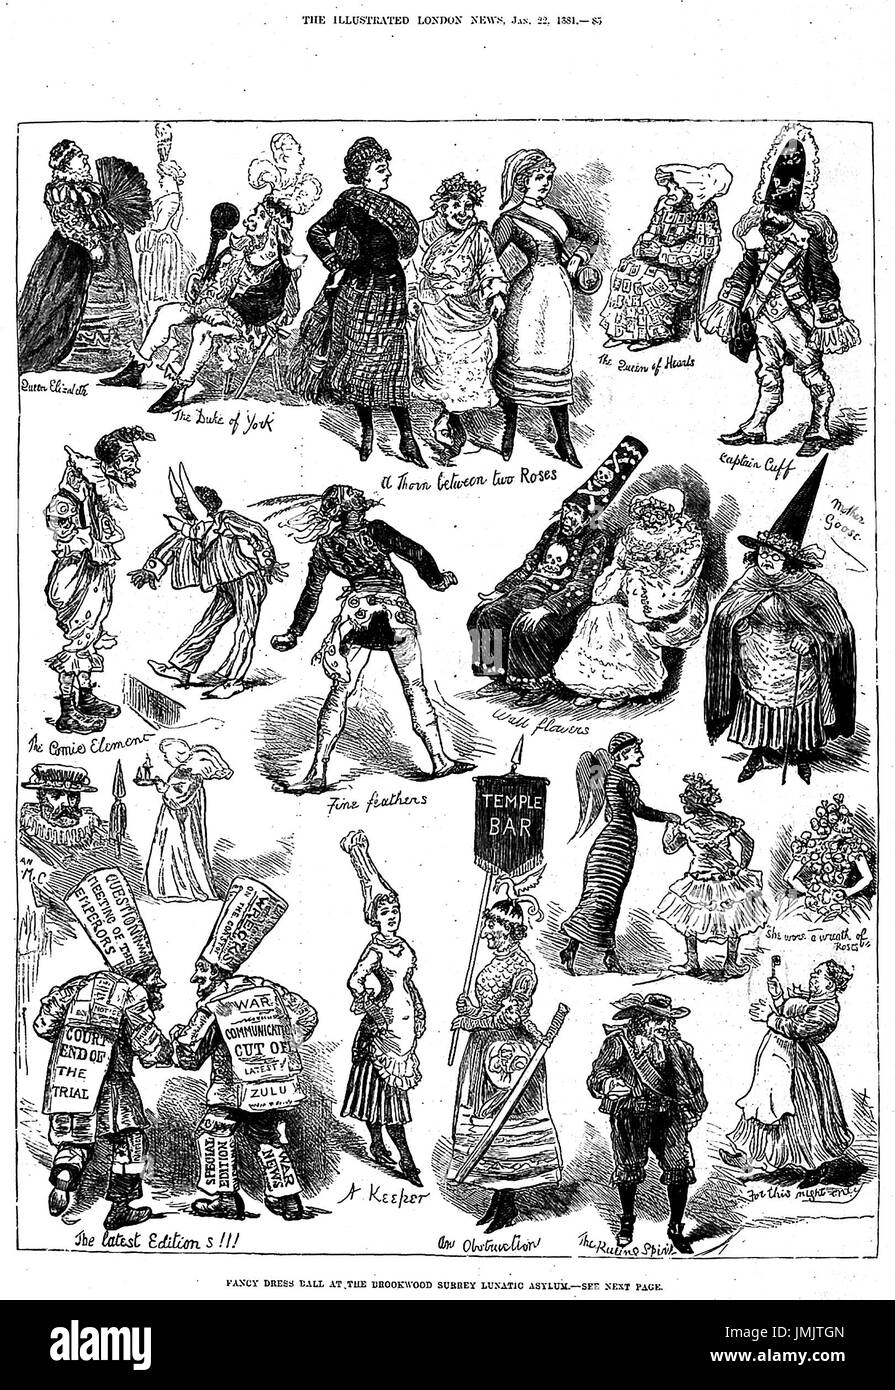 Baile de disfraces BROOKWOOD asilo lunático como se muestra en el Illustrated London News en enero de 1881 Foto de stock